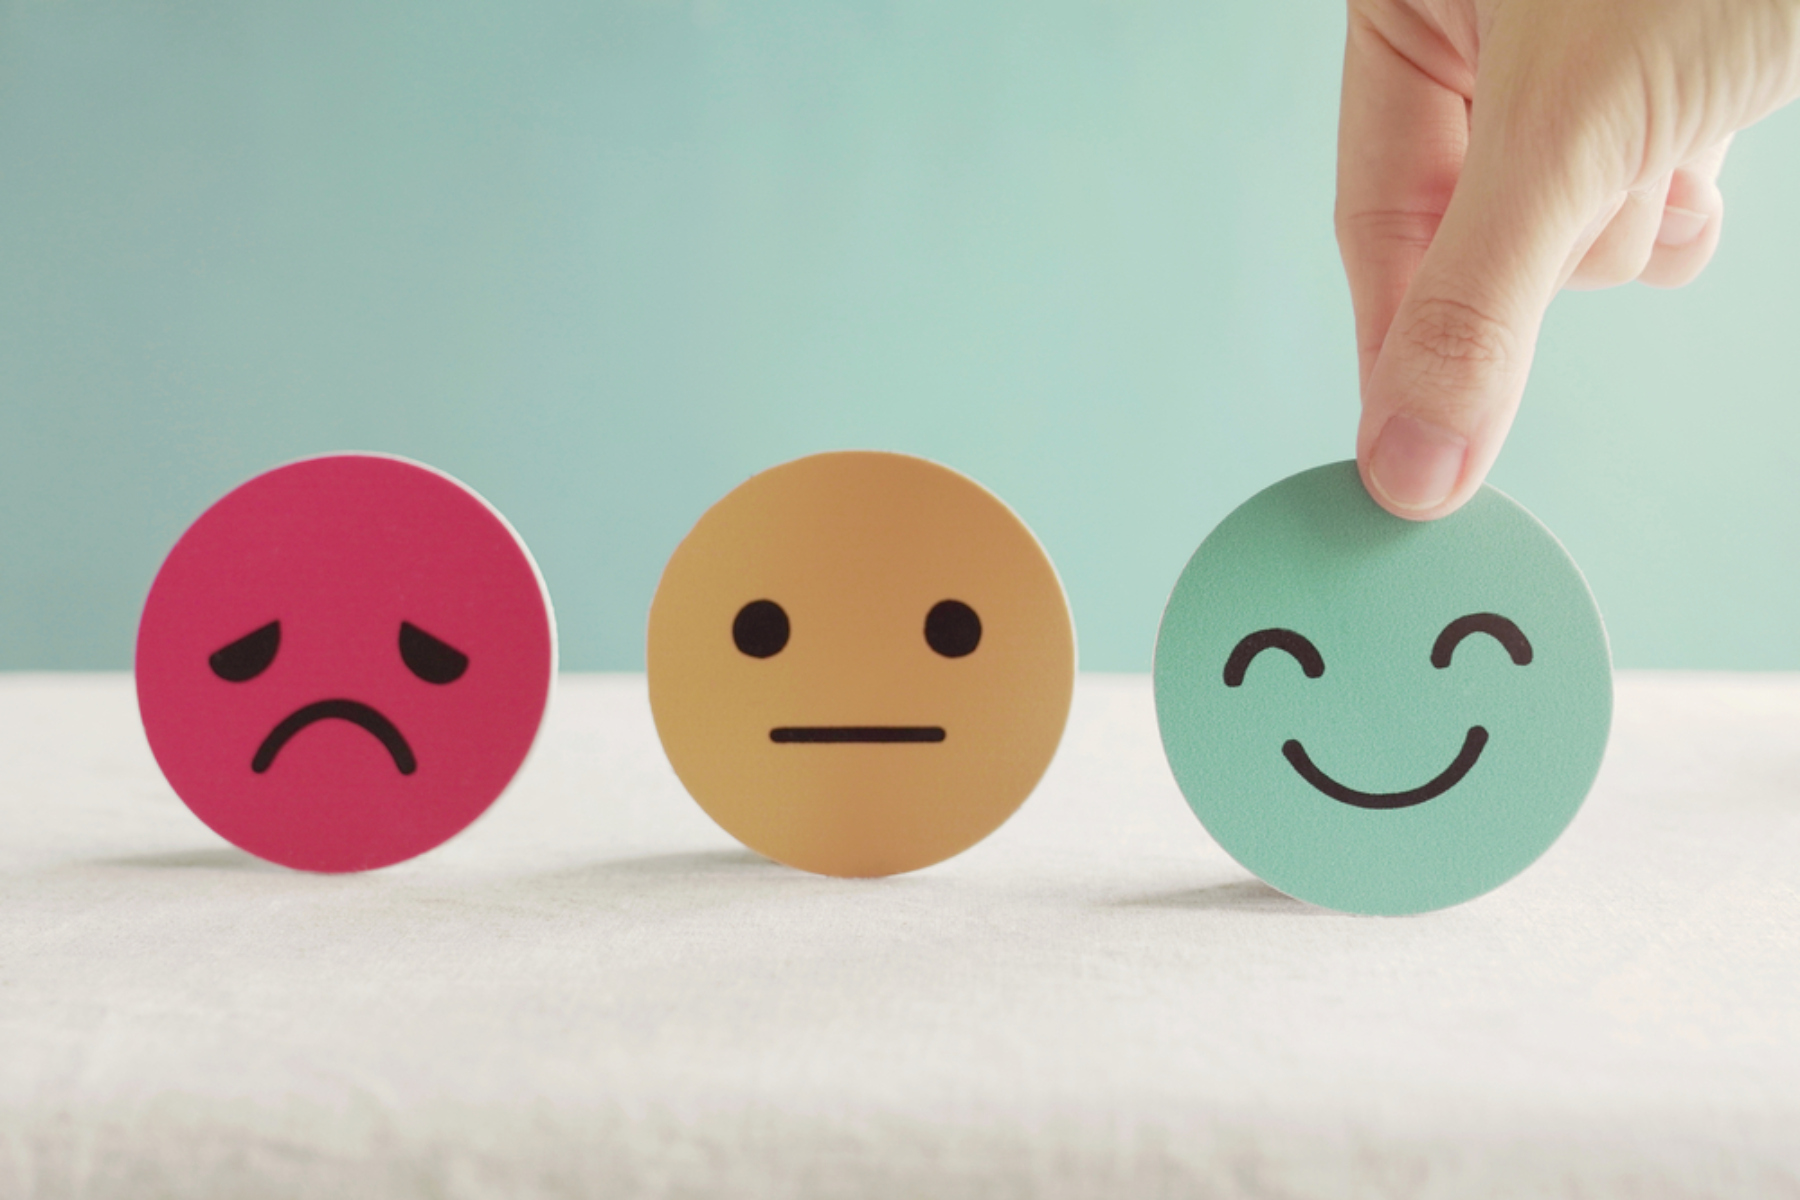 Πώς τα συναισθήματα επηρεάζουν την ανάκτηση λέξεων σε άτομα με αφασία